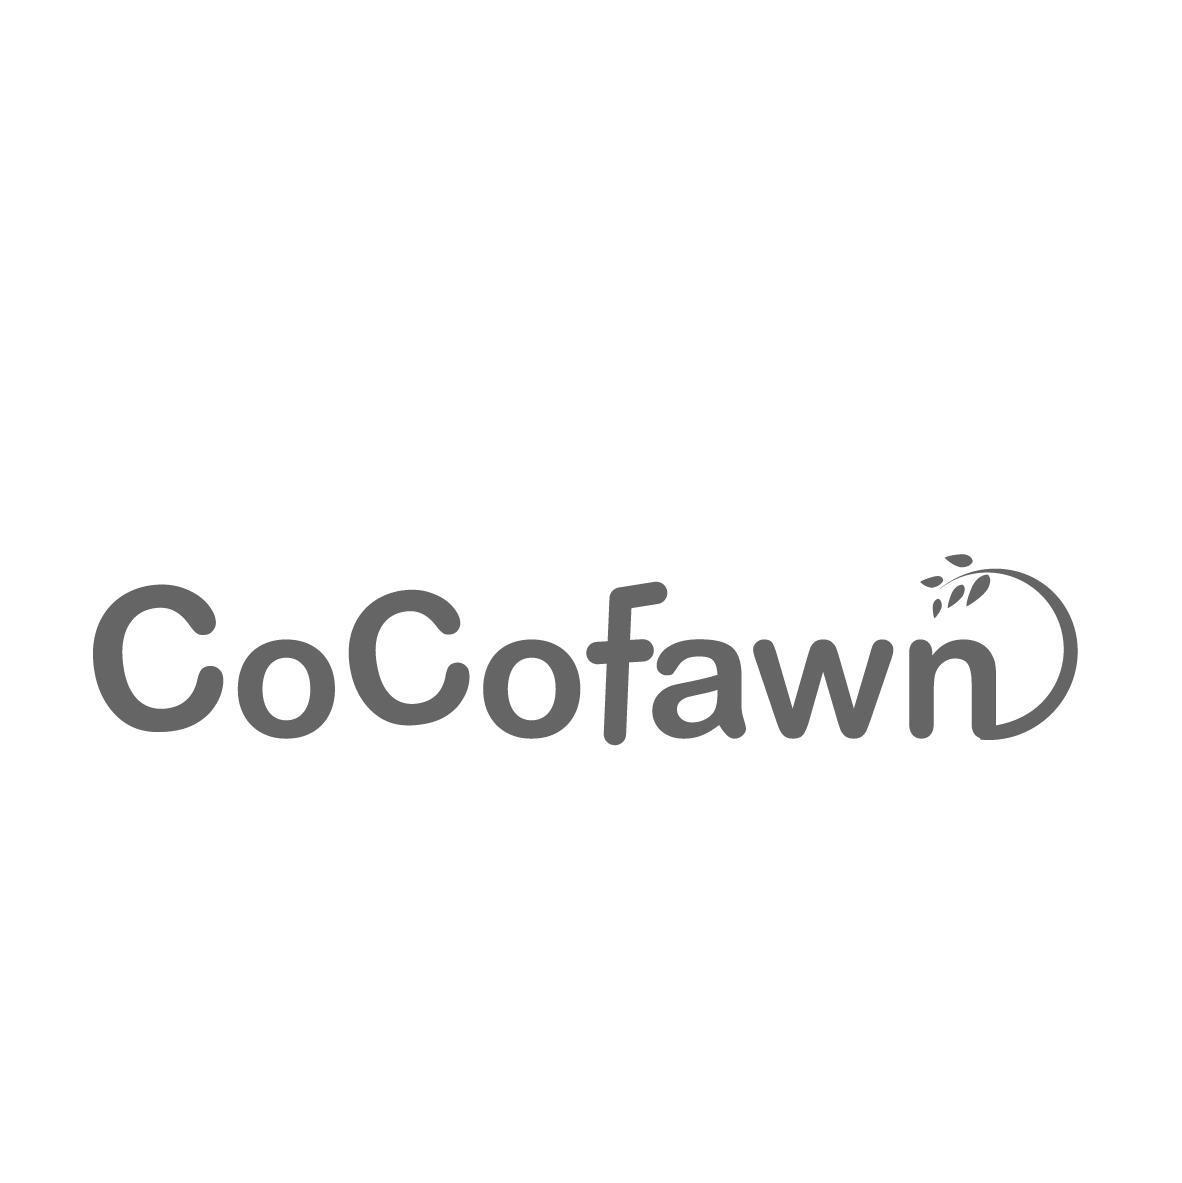 COCOFAWN